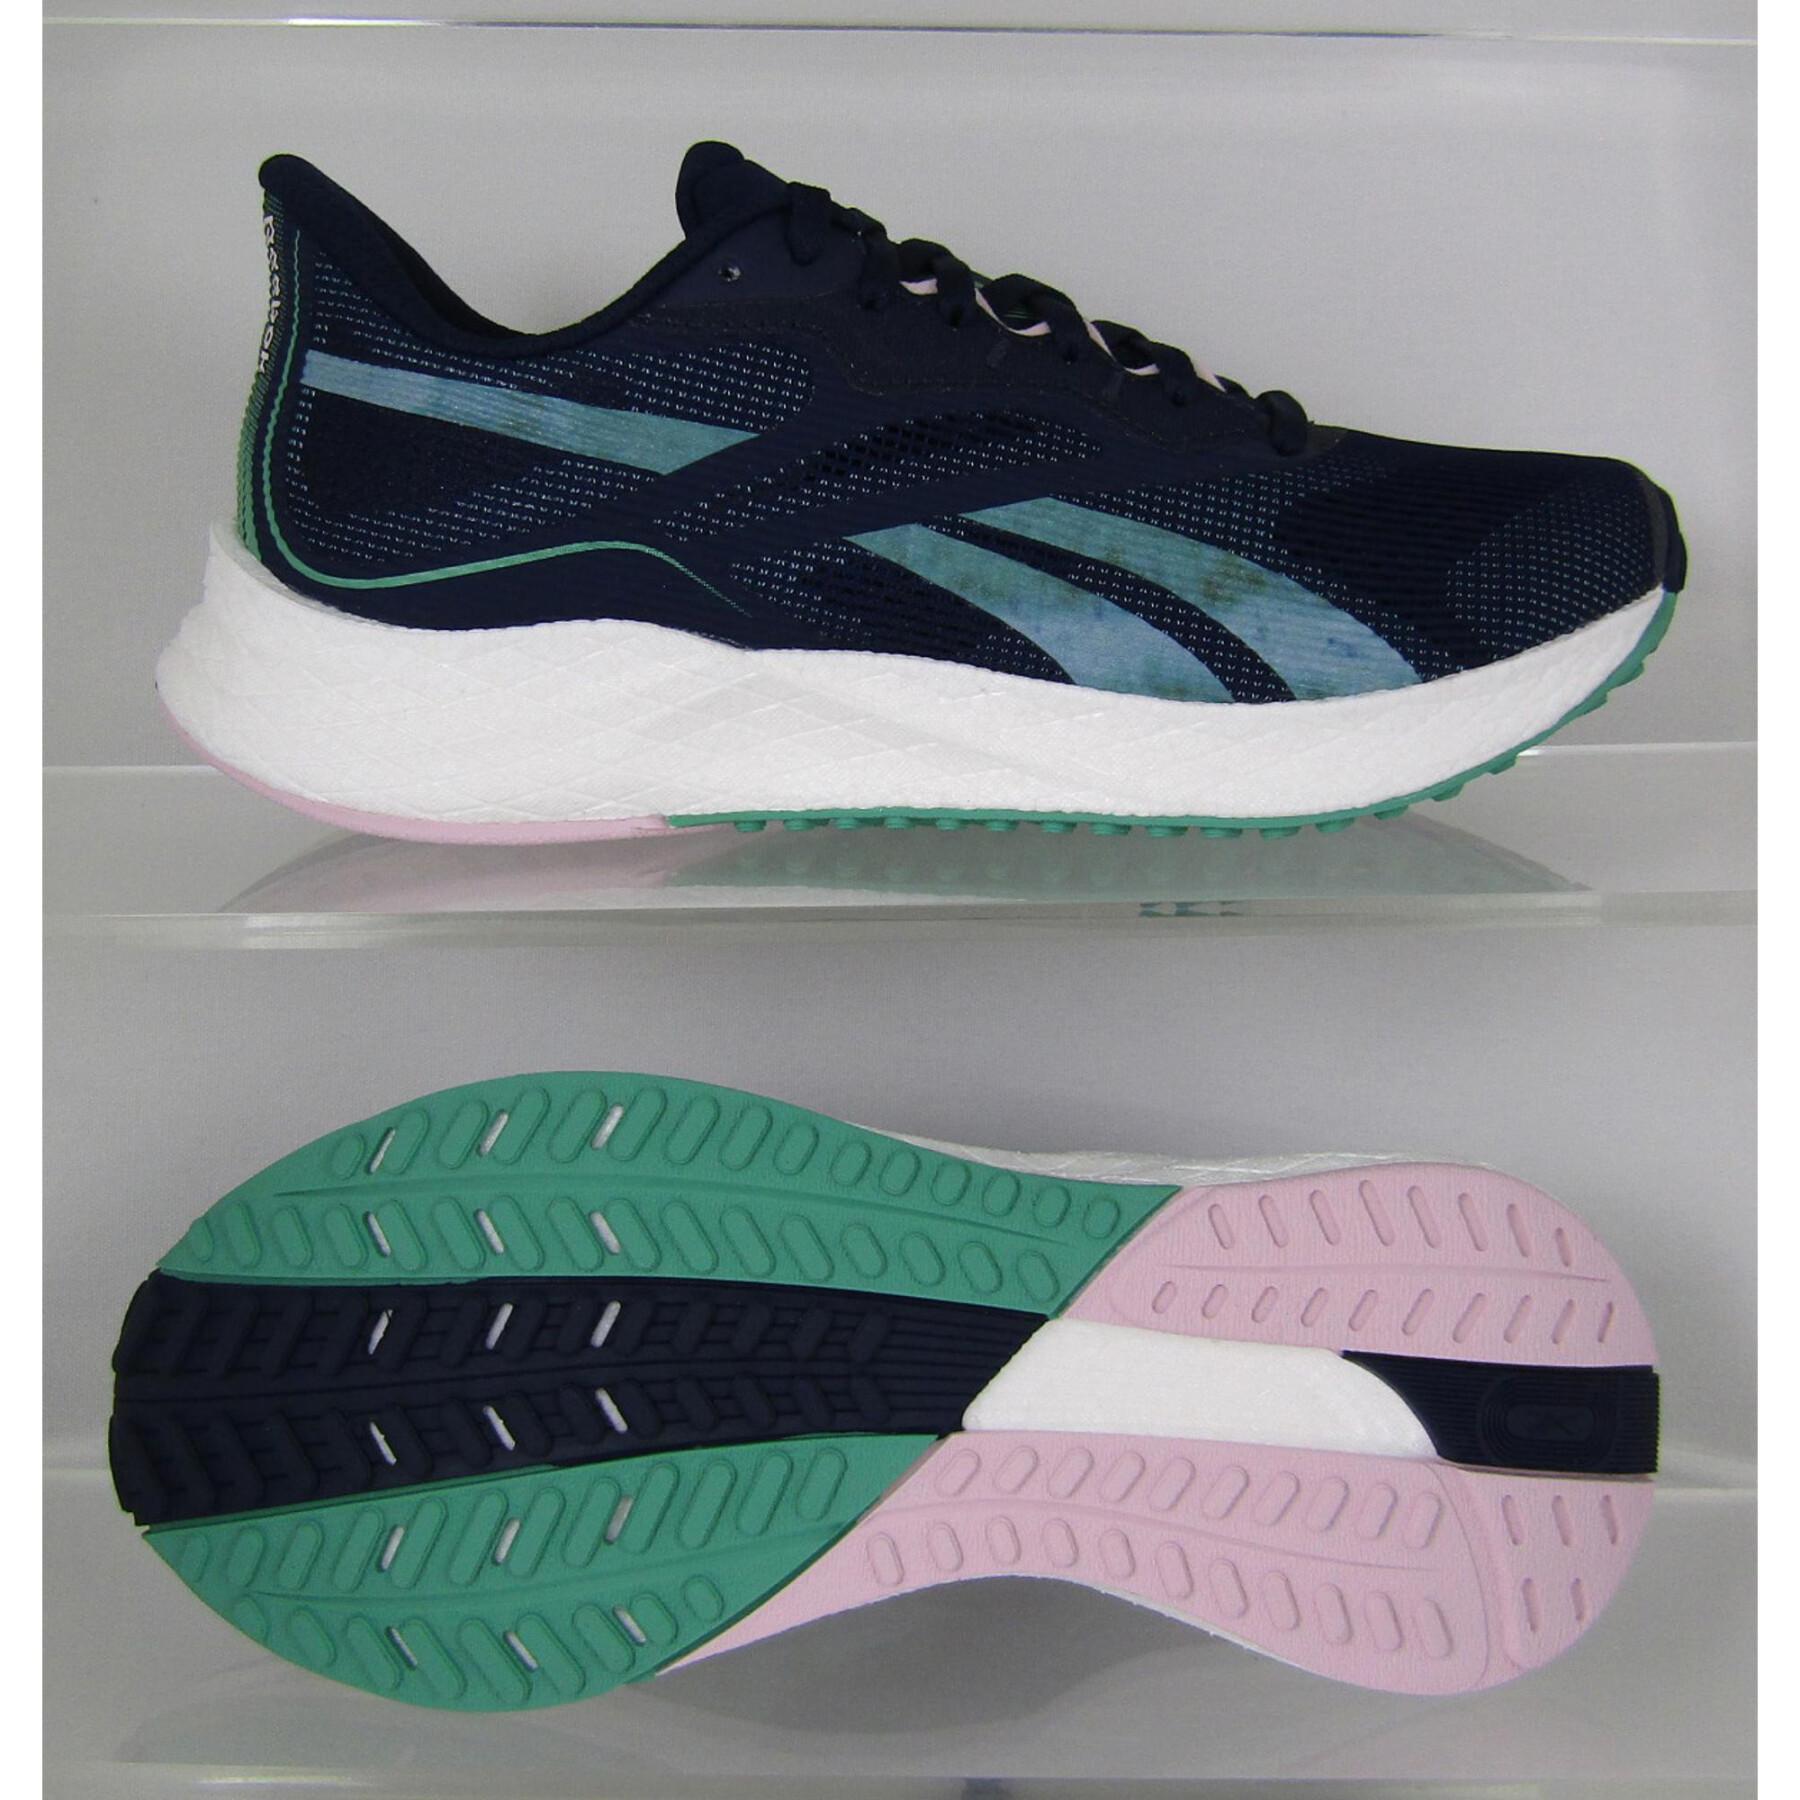 Chaussures de running femme Reebok Floatride Energy 3